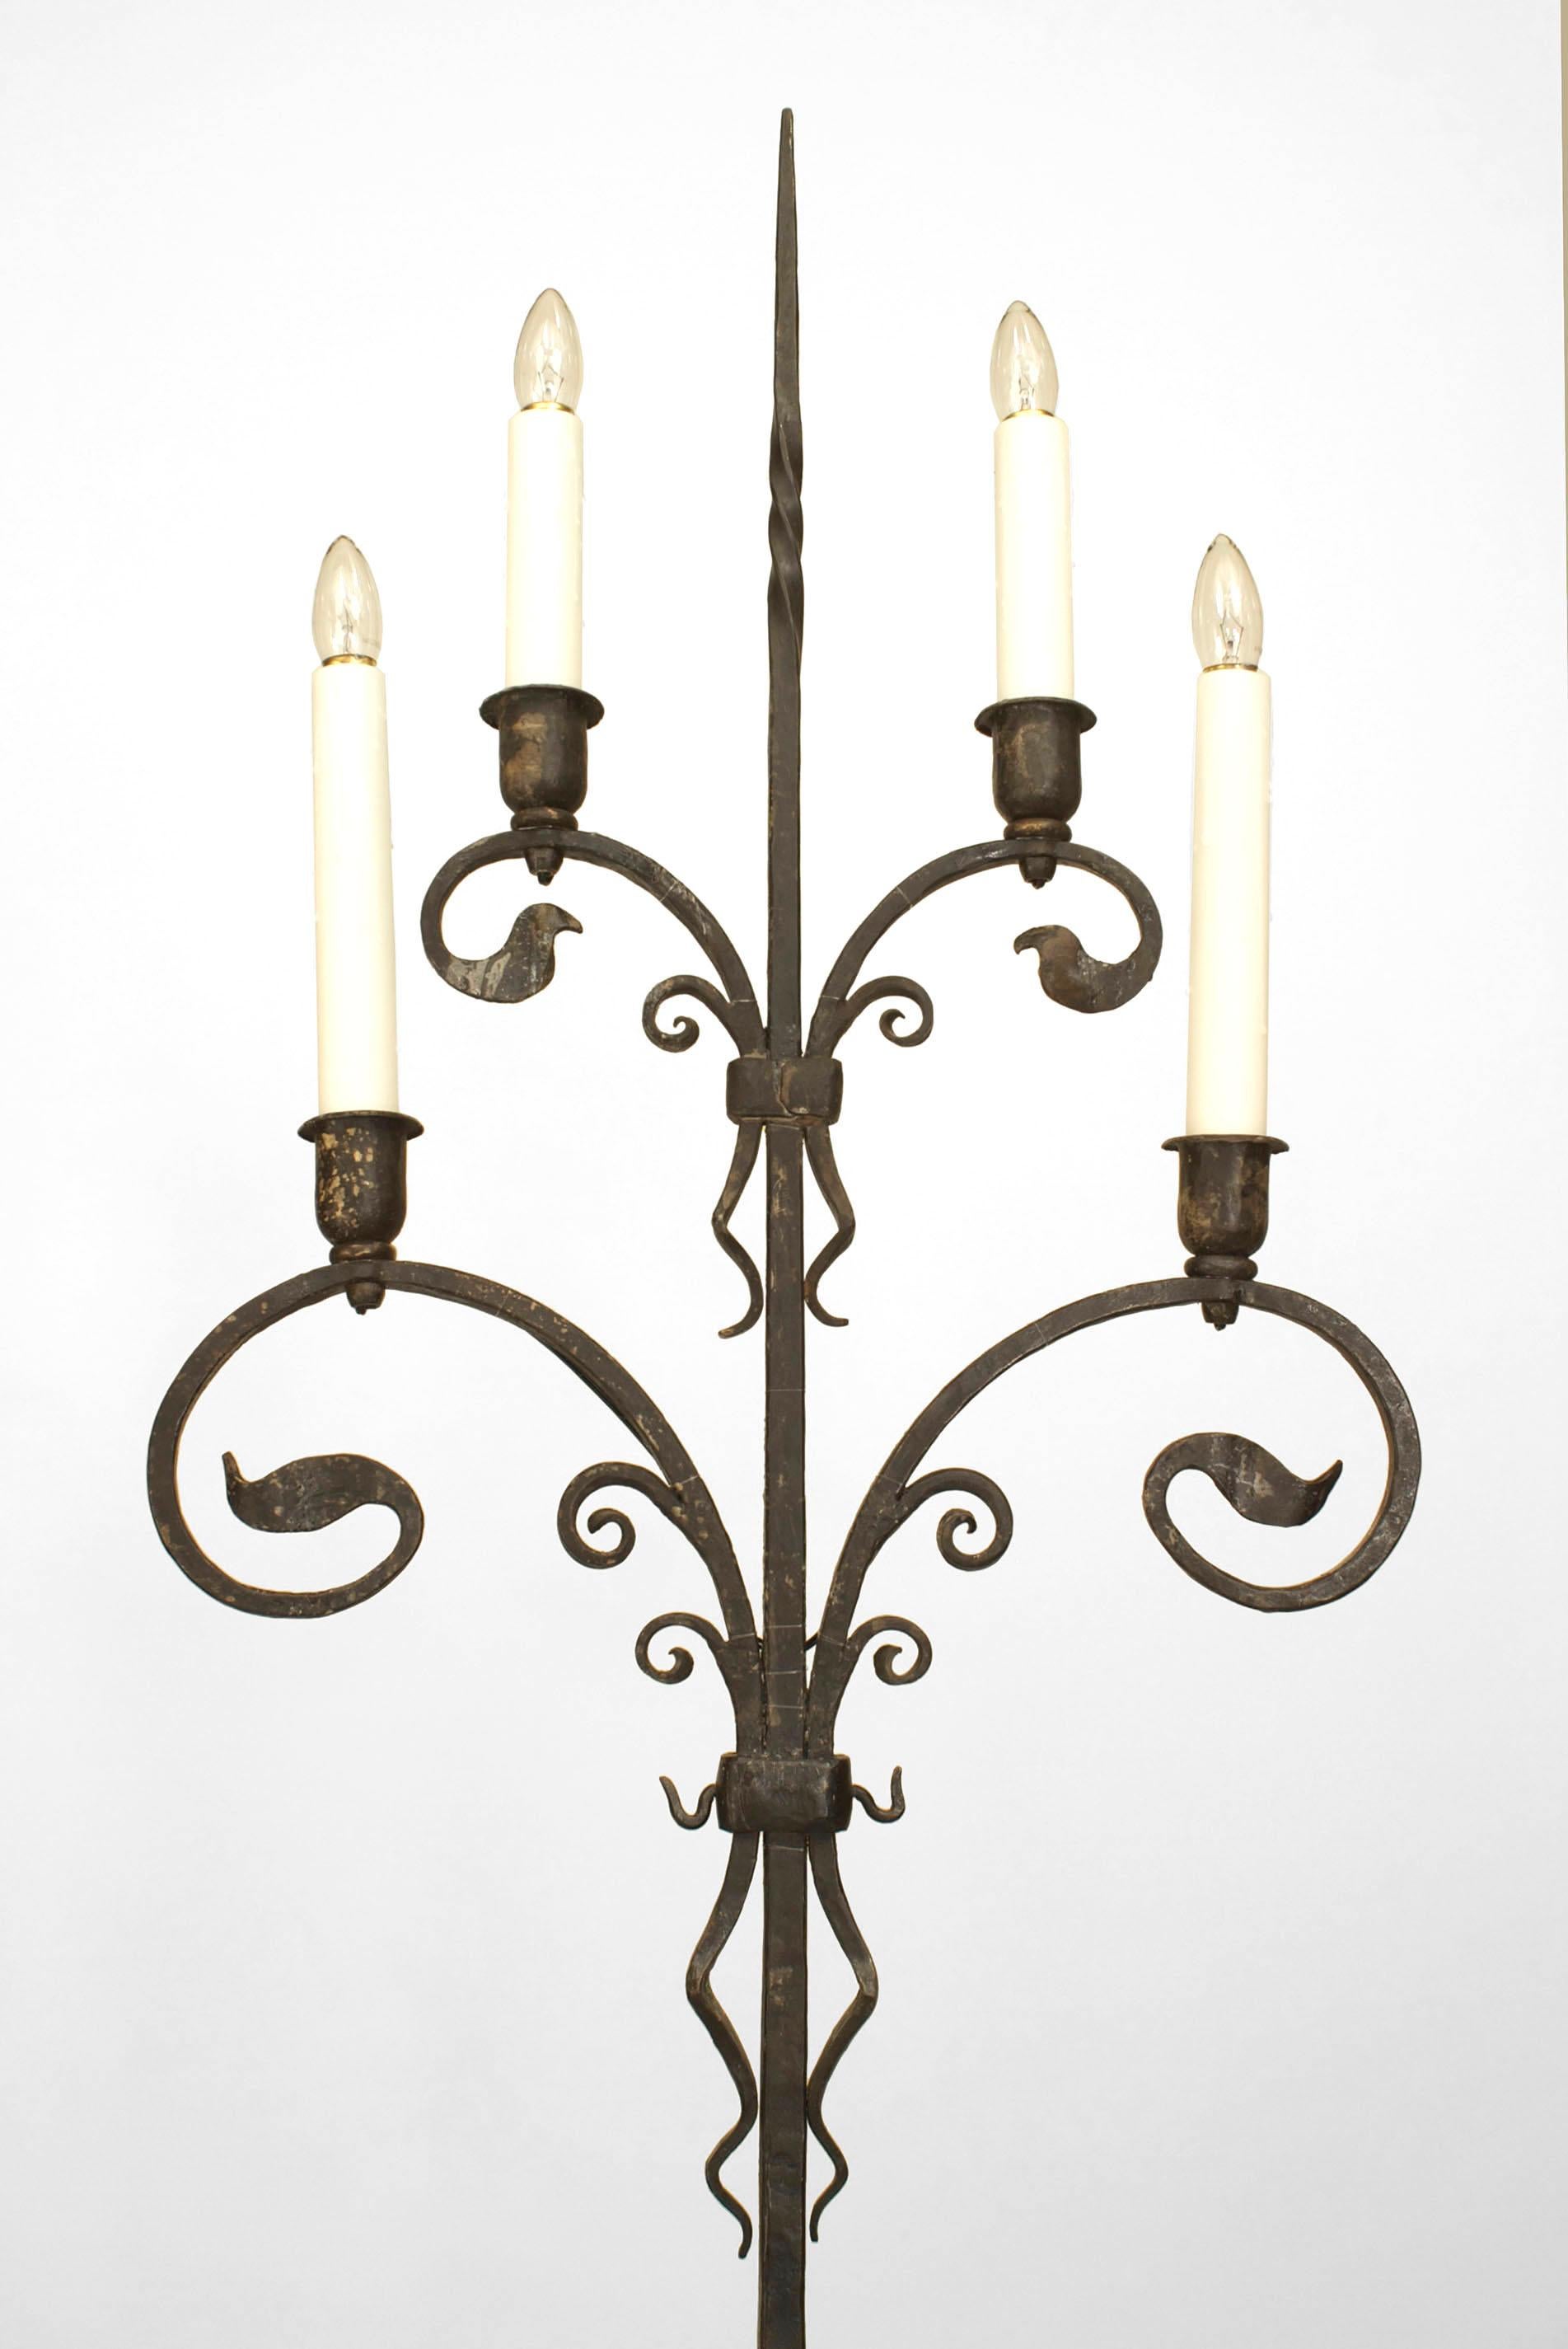 Paire de chandeliers à 4 lumières en fer forgé de l'époque victorienne (1910), avec des bras feuillagés en volutes supportés par une base tripode (attribuée à SAMUEL YELLIN) (PRIX DE LA Paire).
